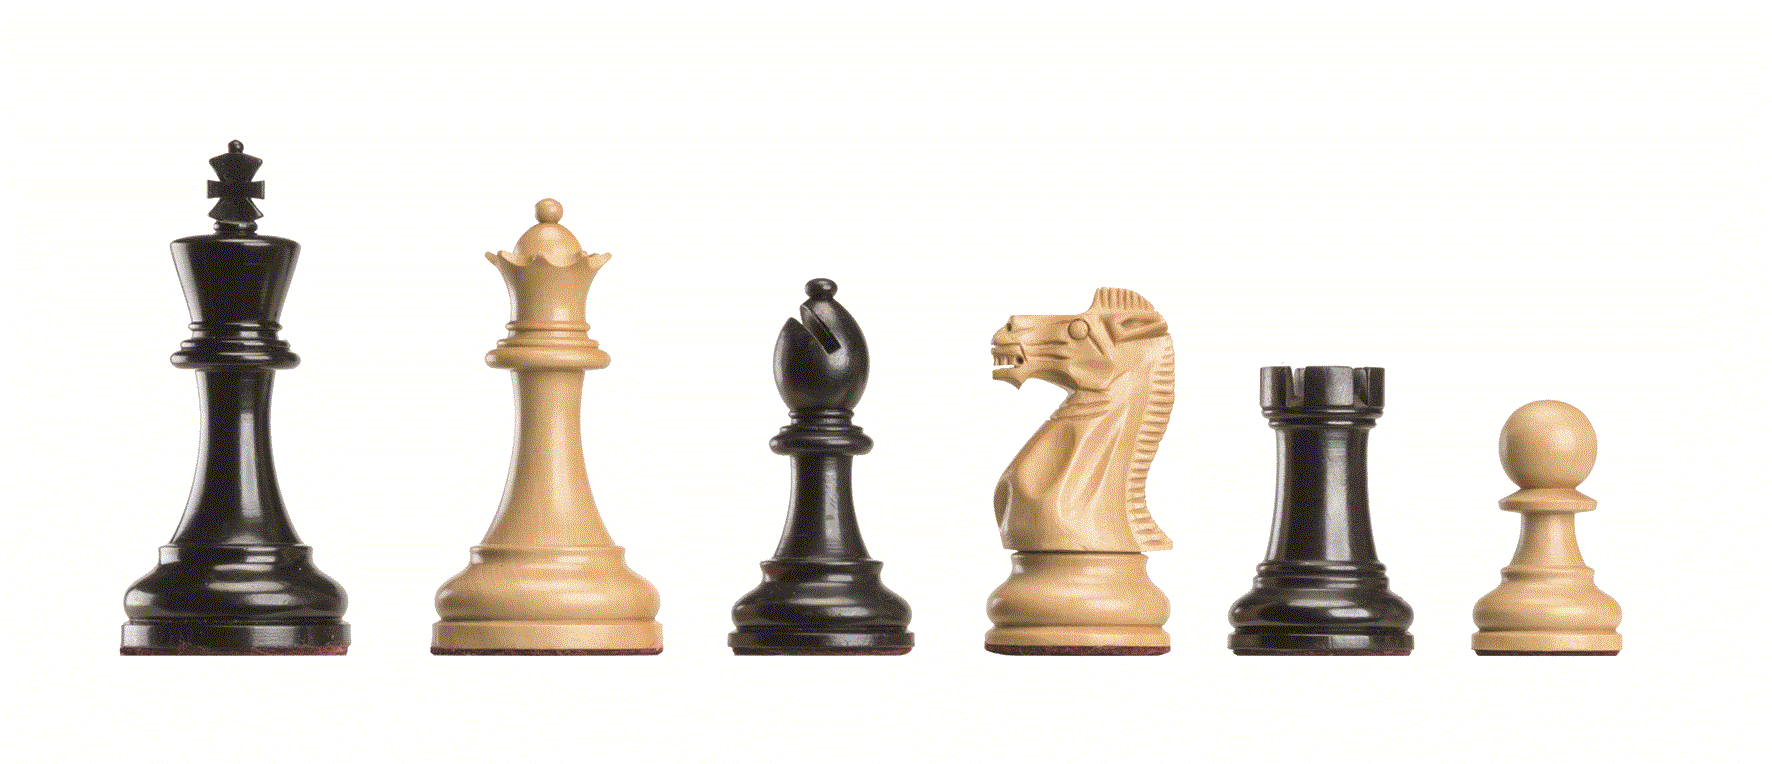 10725 Judit Polgar Deluxe Chess Pieces in Wooden Box